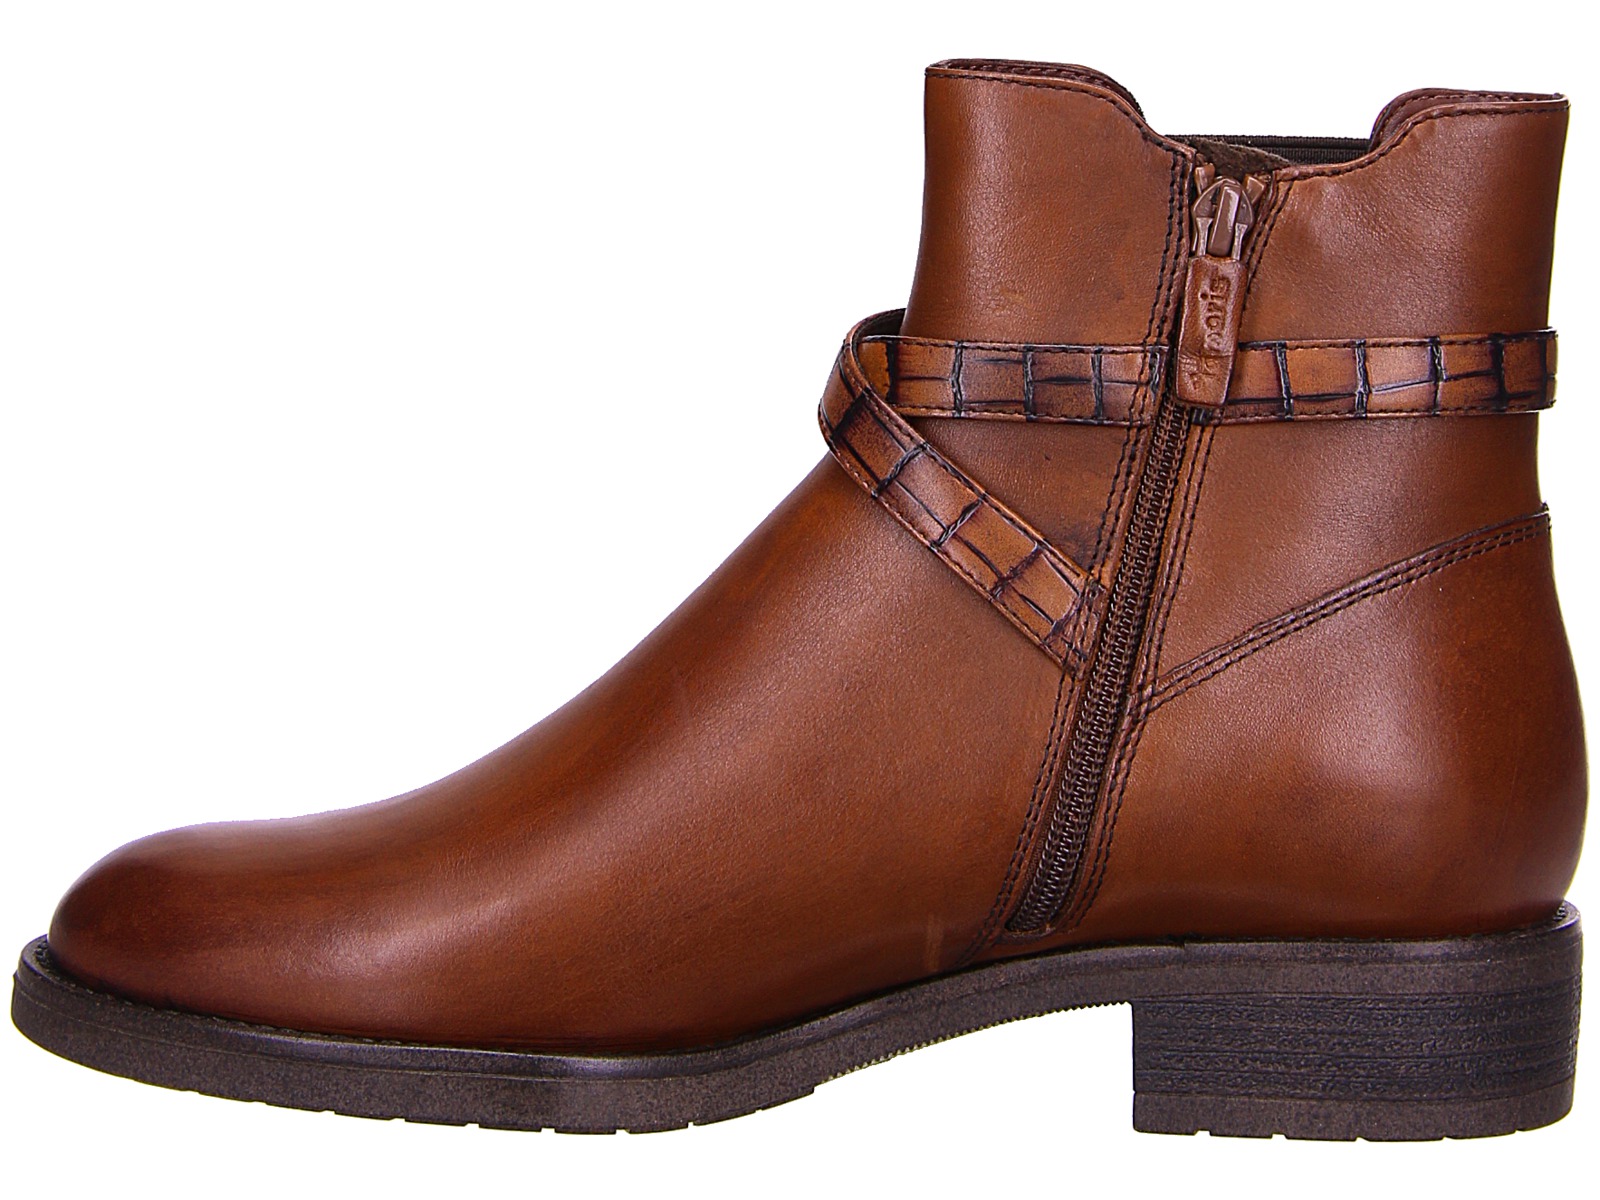 Tamaris Boots 1-1-25385-25-306